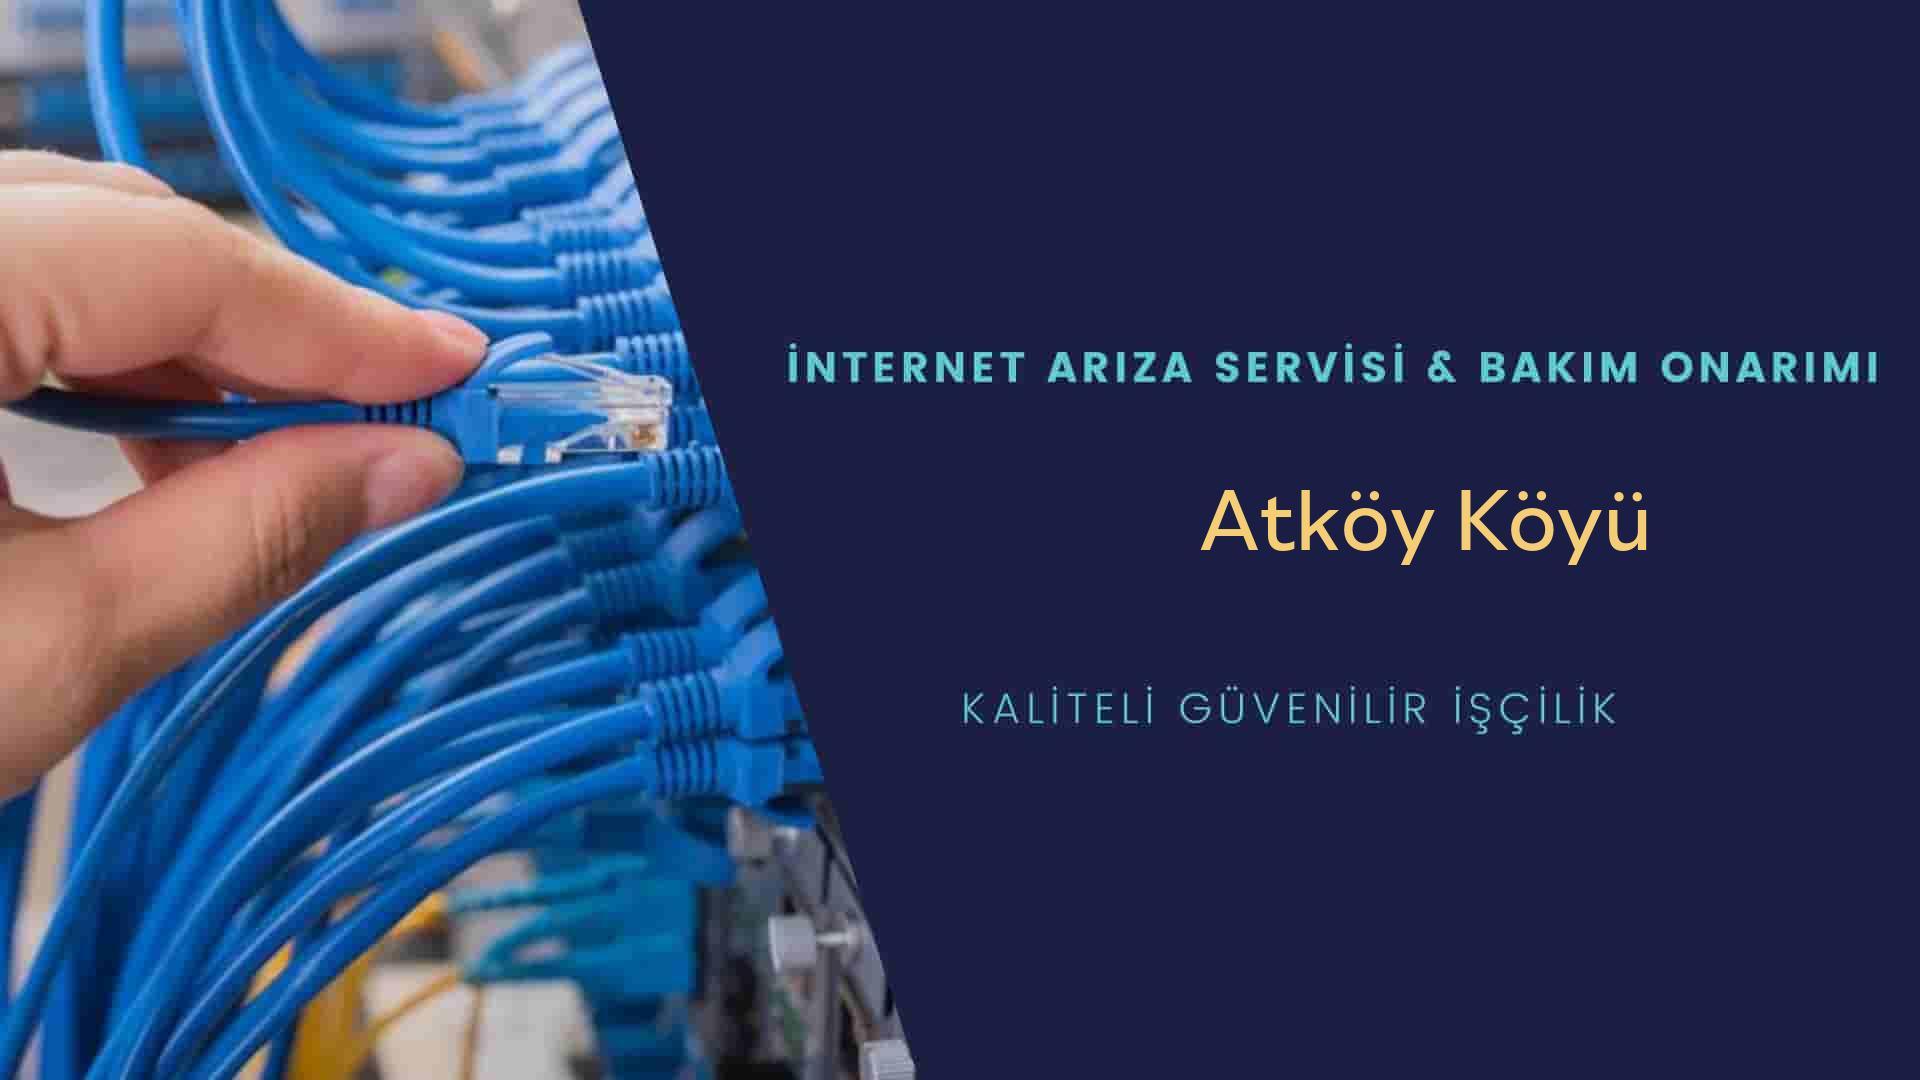 Atköy Köyü internet kablosu çekimi yapan yerler veya elektrikçiler mi? arıyorsunuz doğru yerdesiniz o zaman sizlere 7/24 yardımcı olacak profesyonel ustalarımız bir telefon kadar yakındır size.